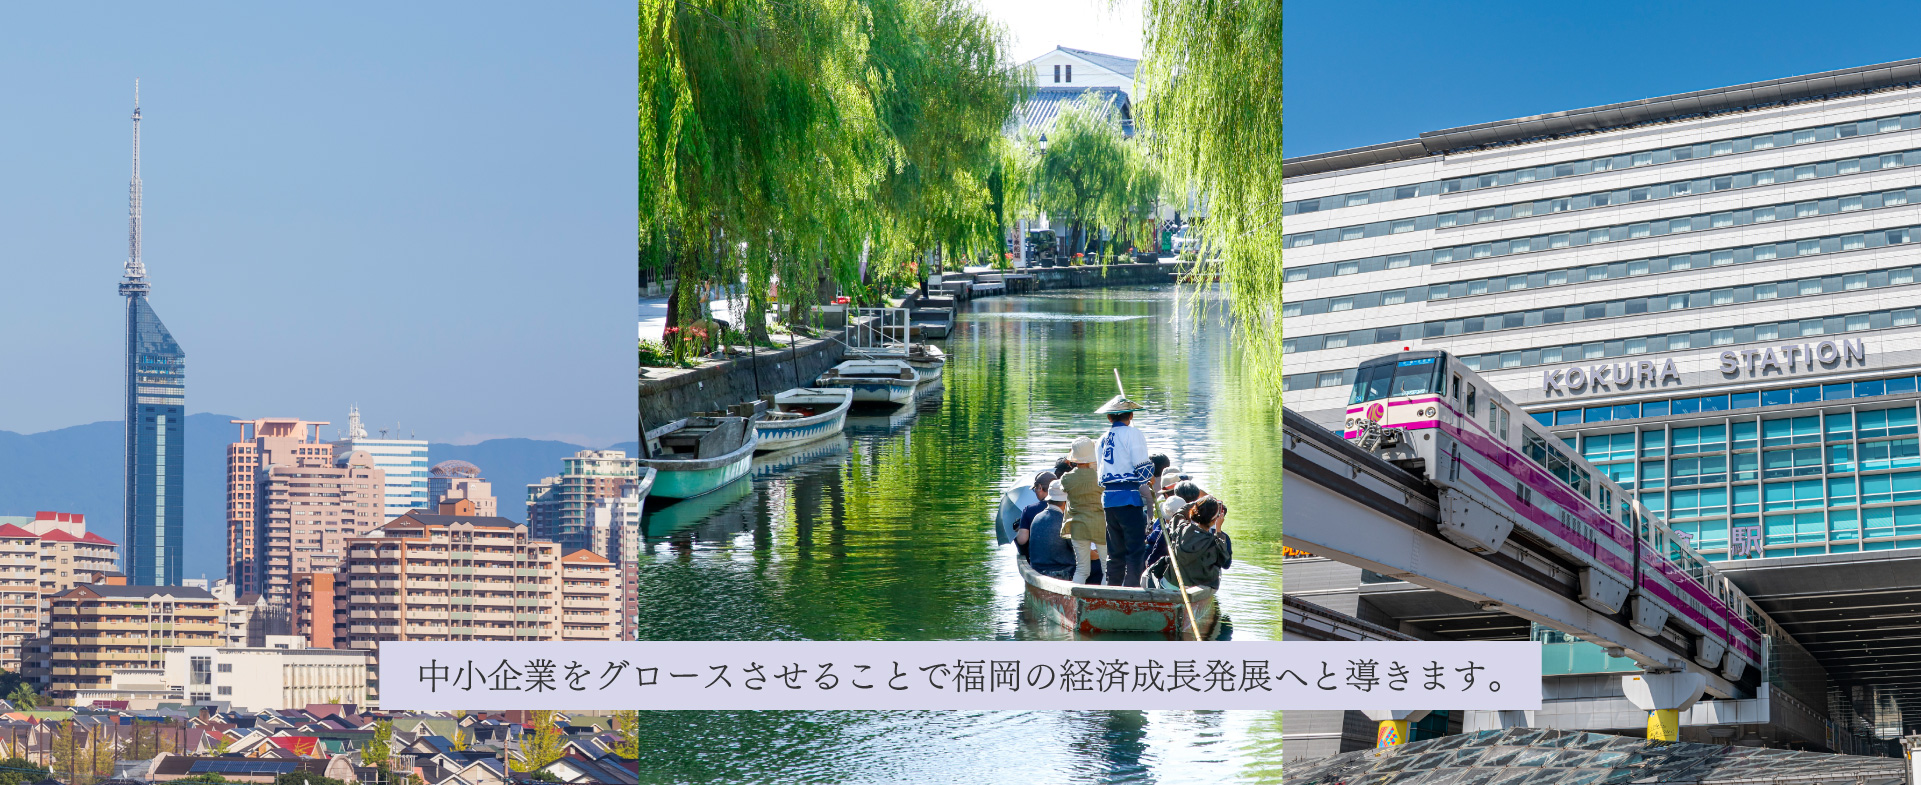 中小企業をグロースさせることで福岡の経済成長発展へと導きます。